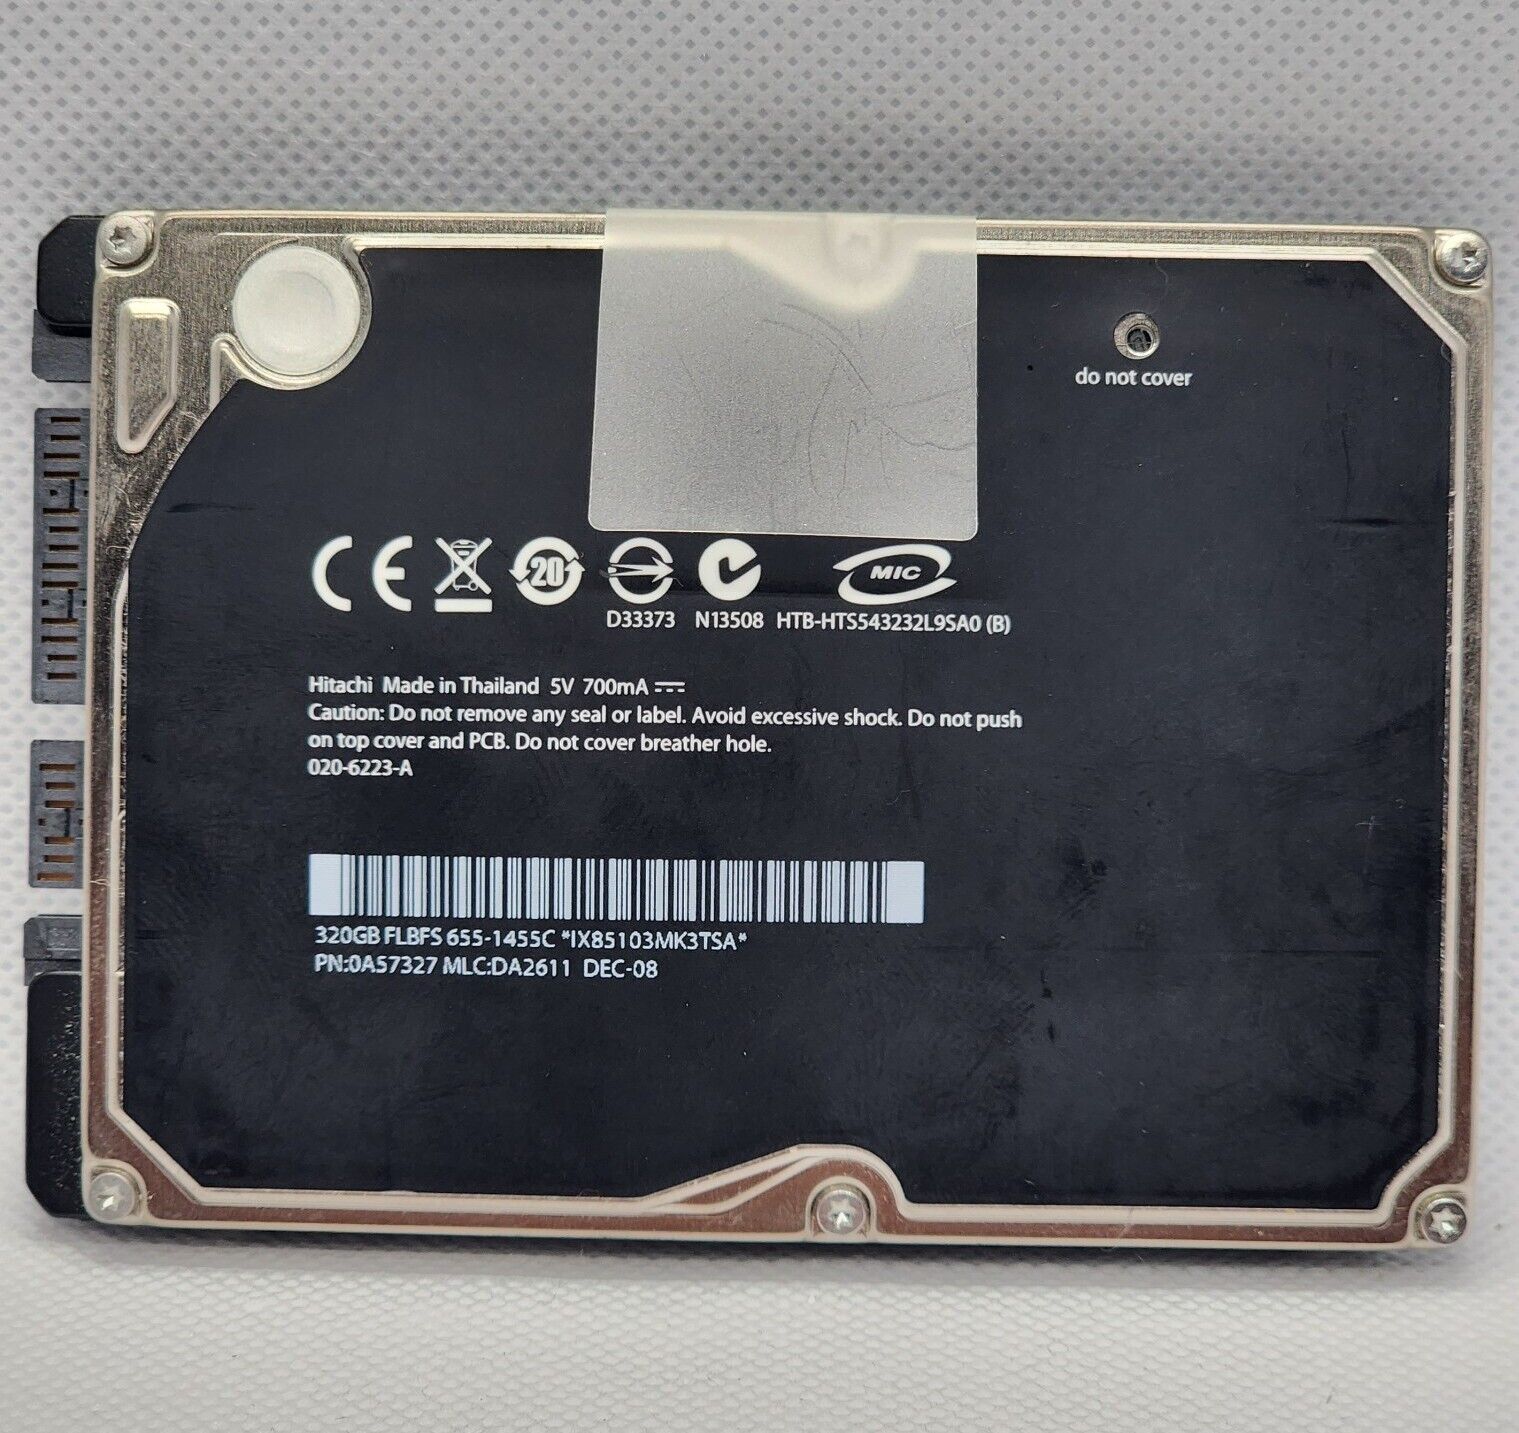 MacBook Pro A1297 Hitachi 320Gb Sata 2.5 Hard Drive 020-6223-A FULLY WIPED HDD